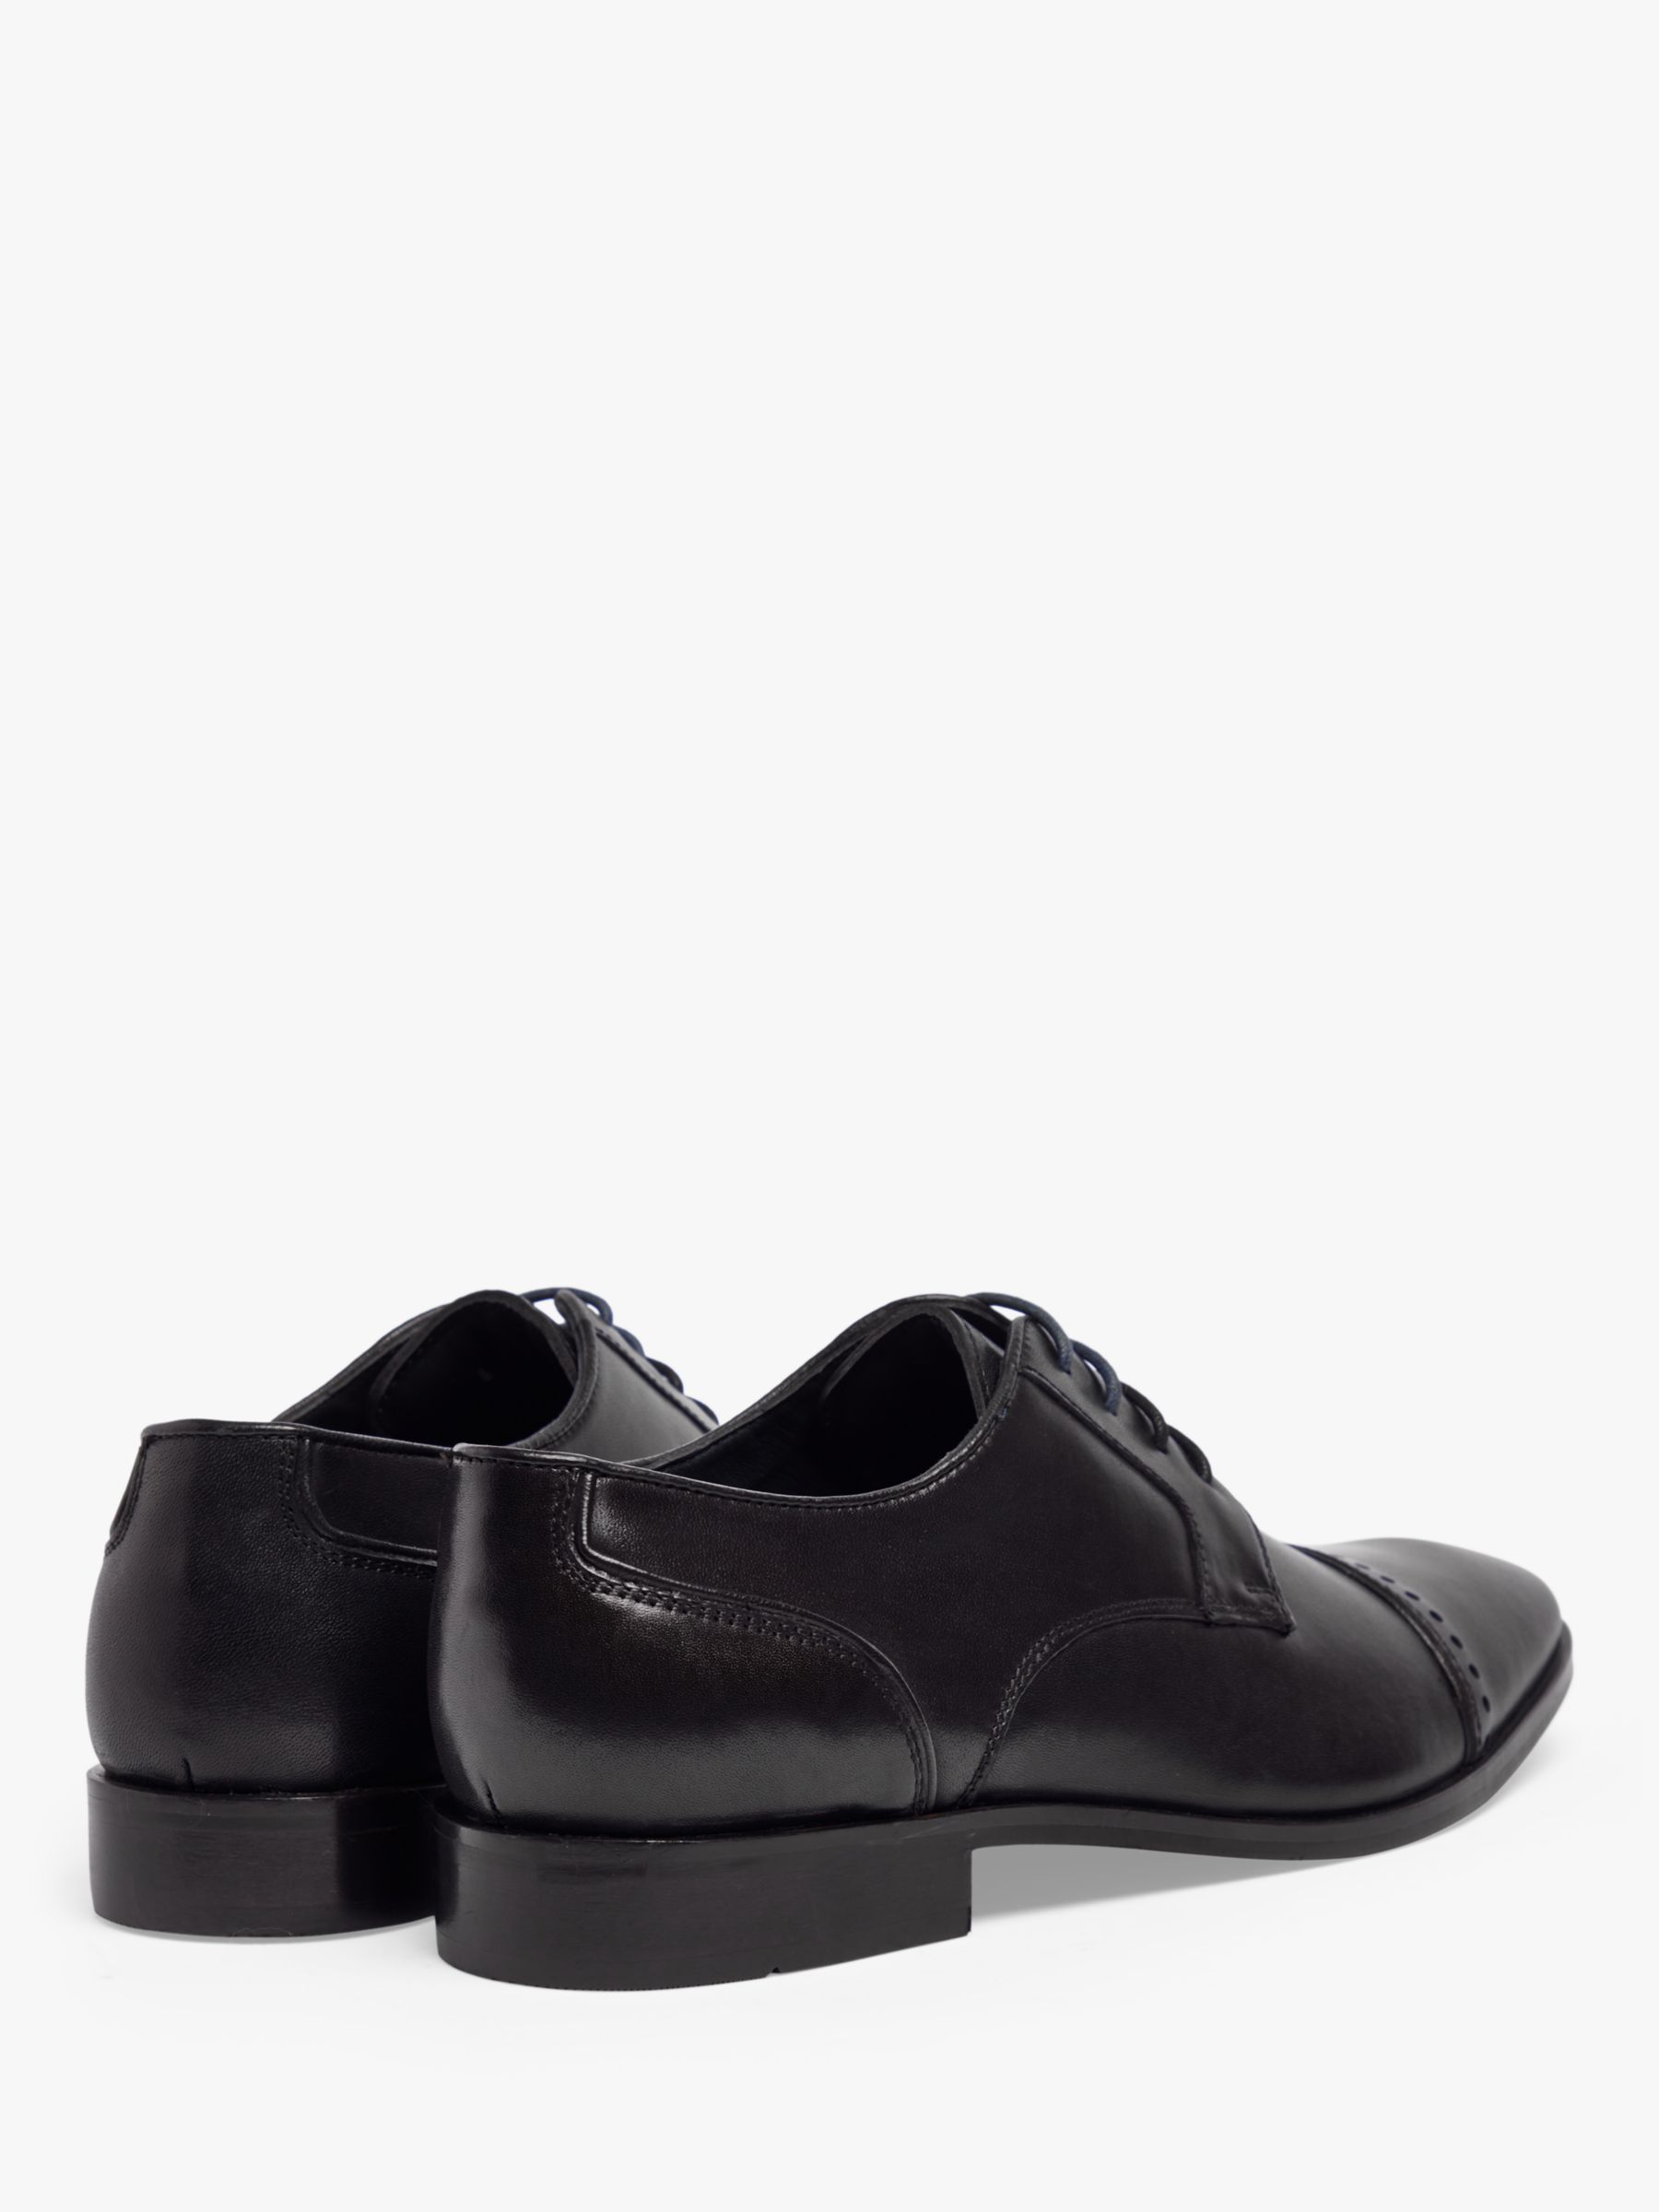 Pod Regus Leather Brogue Detail Shoes, Black, 6